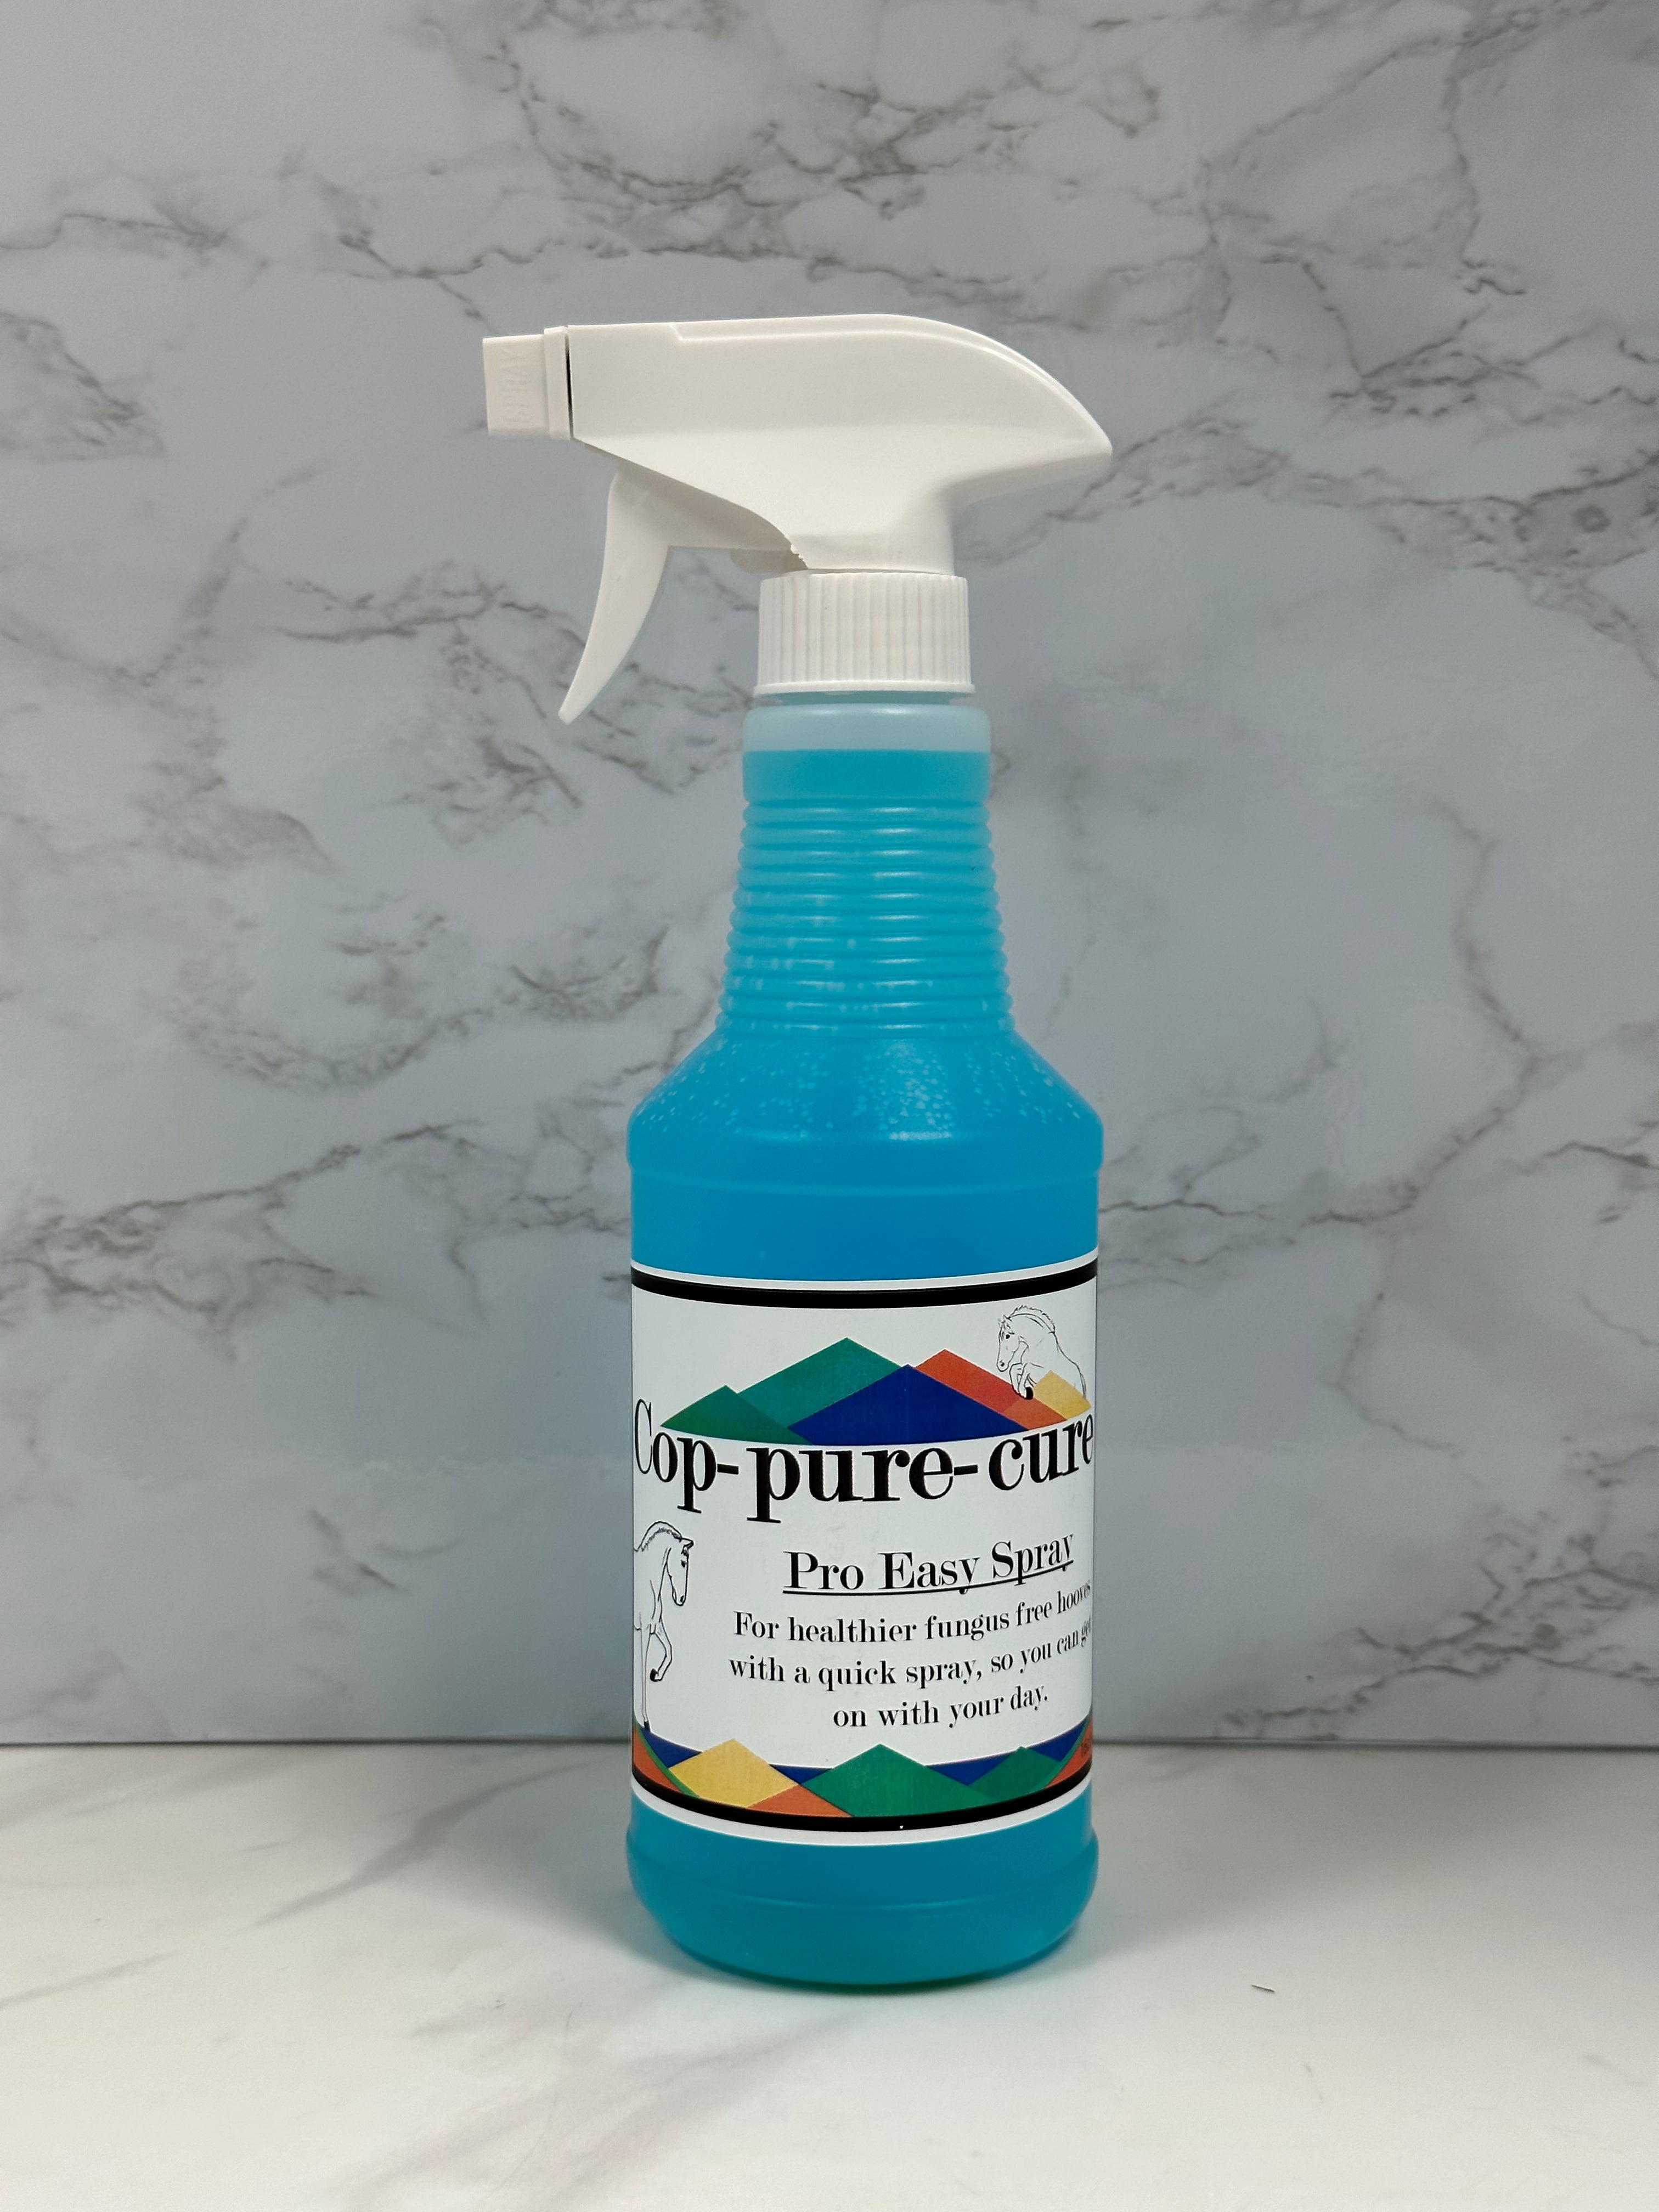 Cop-pure-cure Easy Spray 16oz